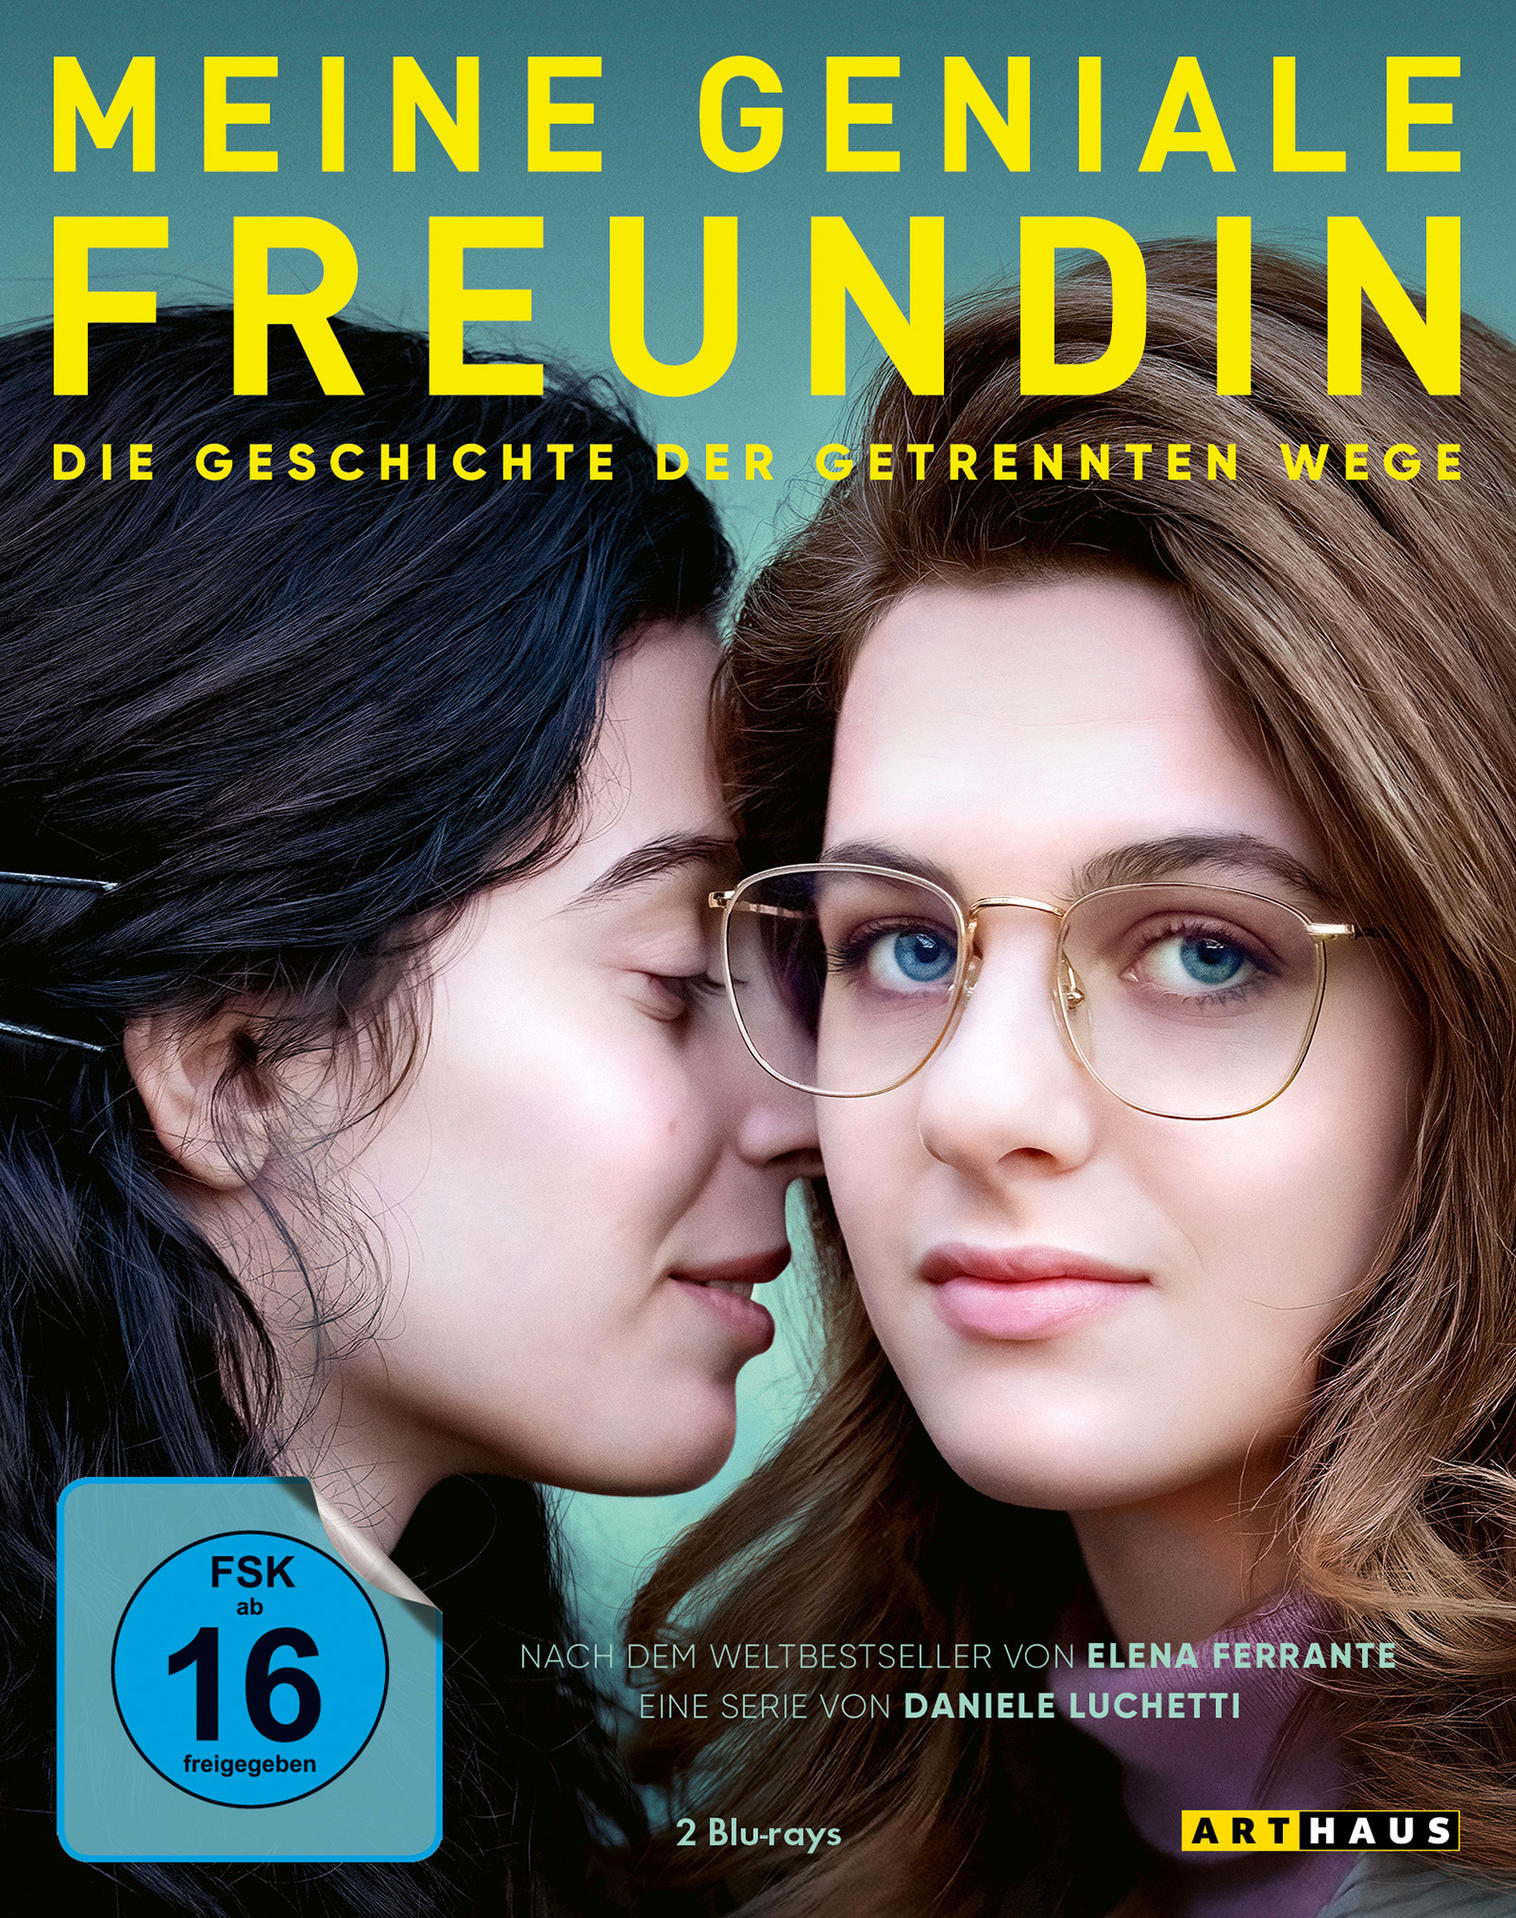 Meine geniale der - 3 Wege - getrennten Geschichte Die Freundin Staffel Blu-ray